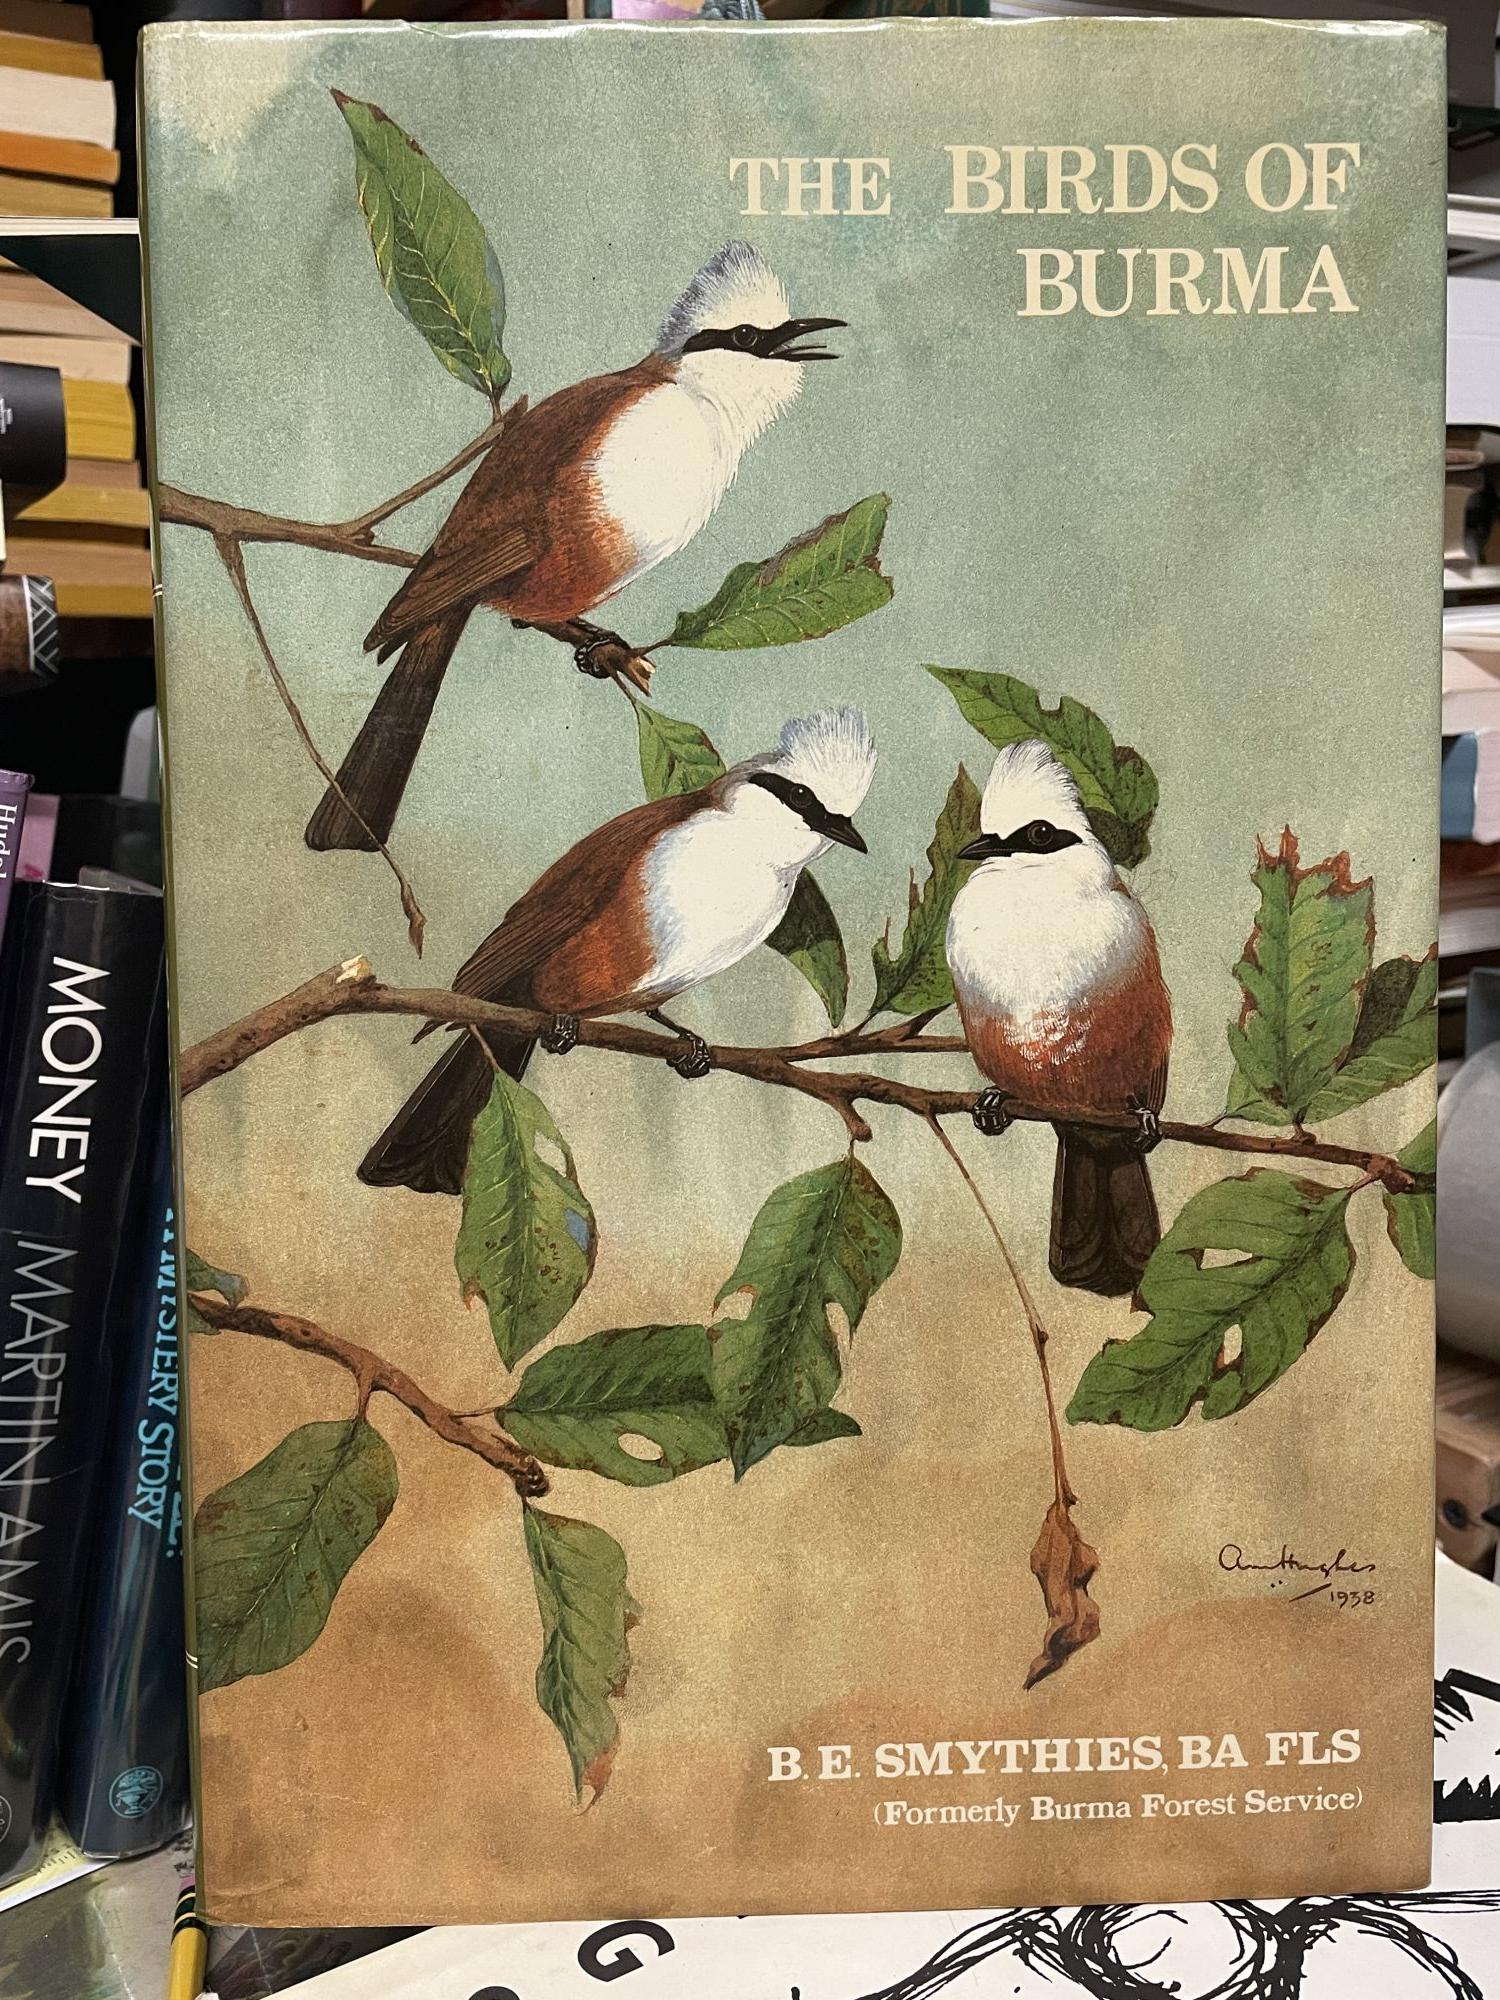 The Birds of Burma - Smythies, B.E.